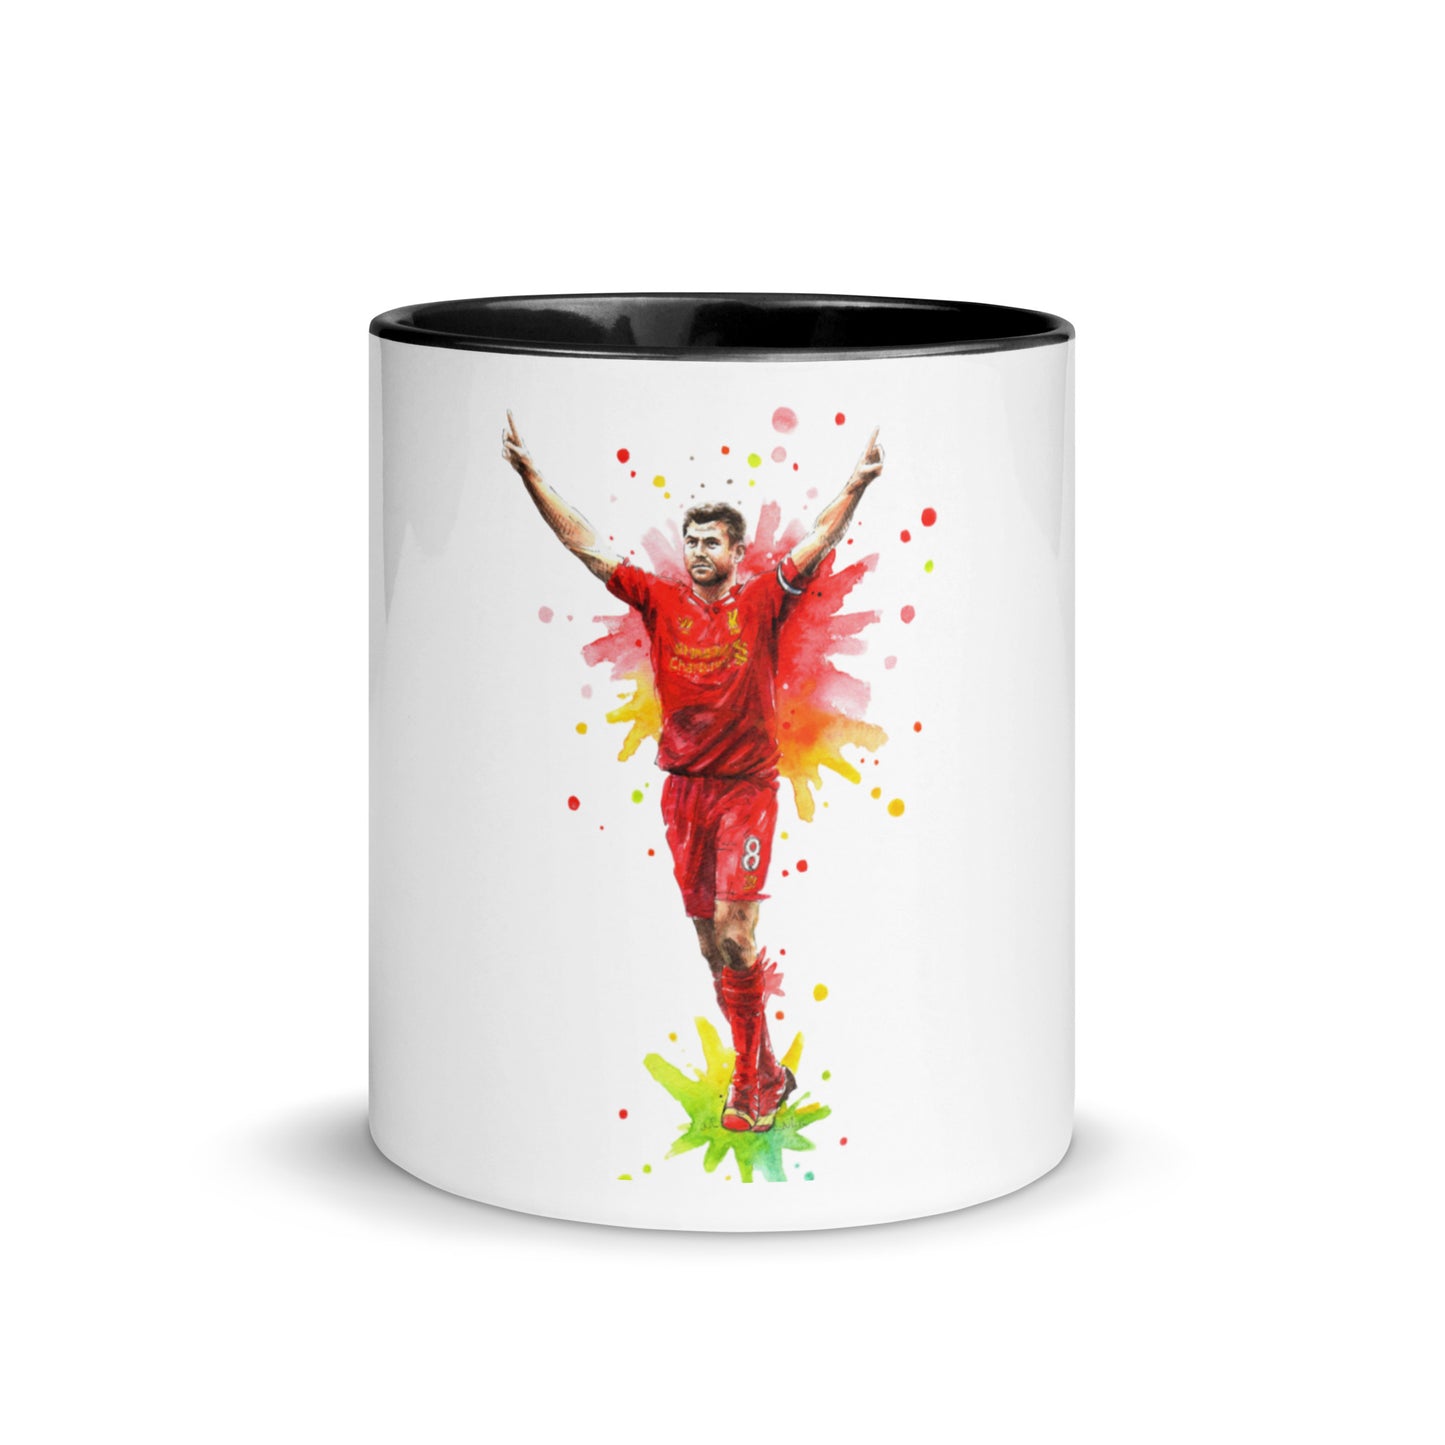 LIV Legend S. Gerrard Coffee Mug with Color Inside - The 90+ Minute